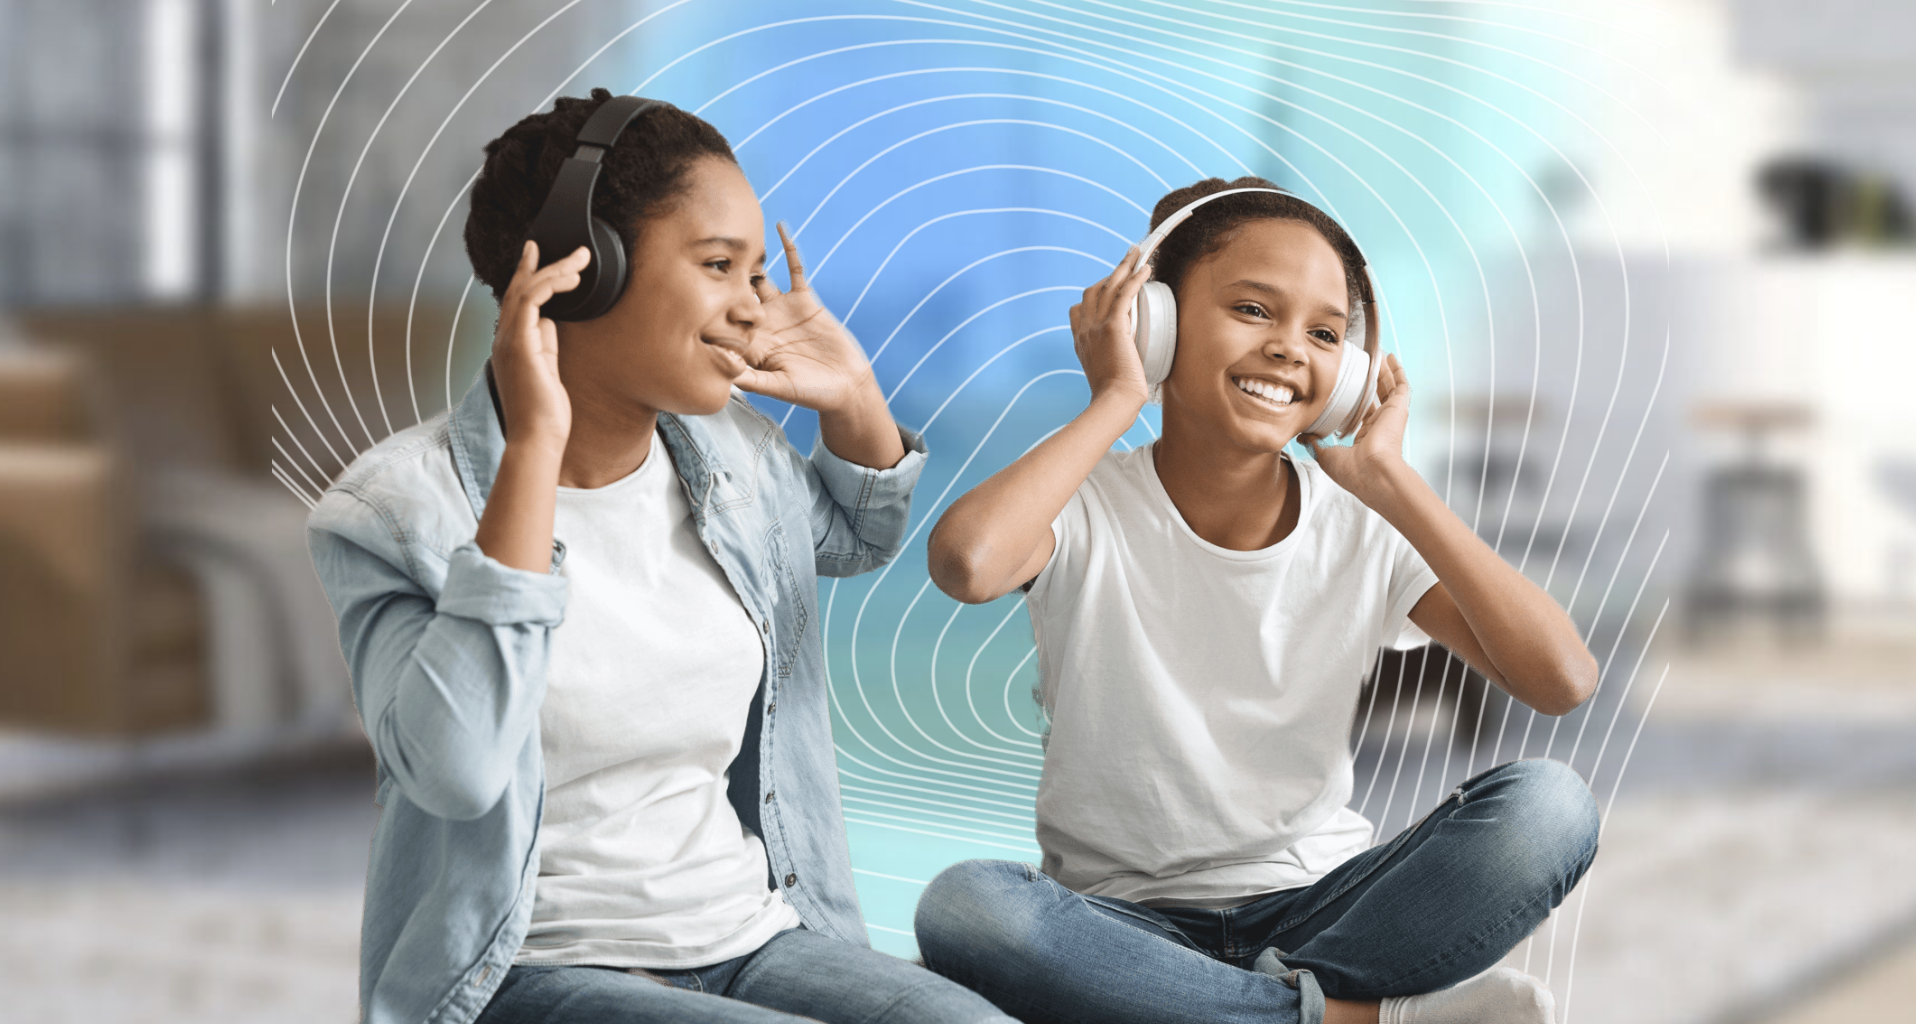 Bluetooth Auracast iki çocuk tarafından kulak üstü kablosuz kulaklıkla paylaşılıyor